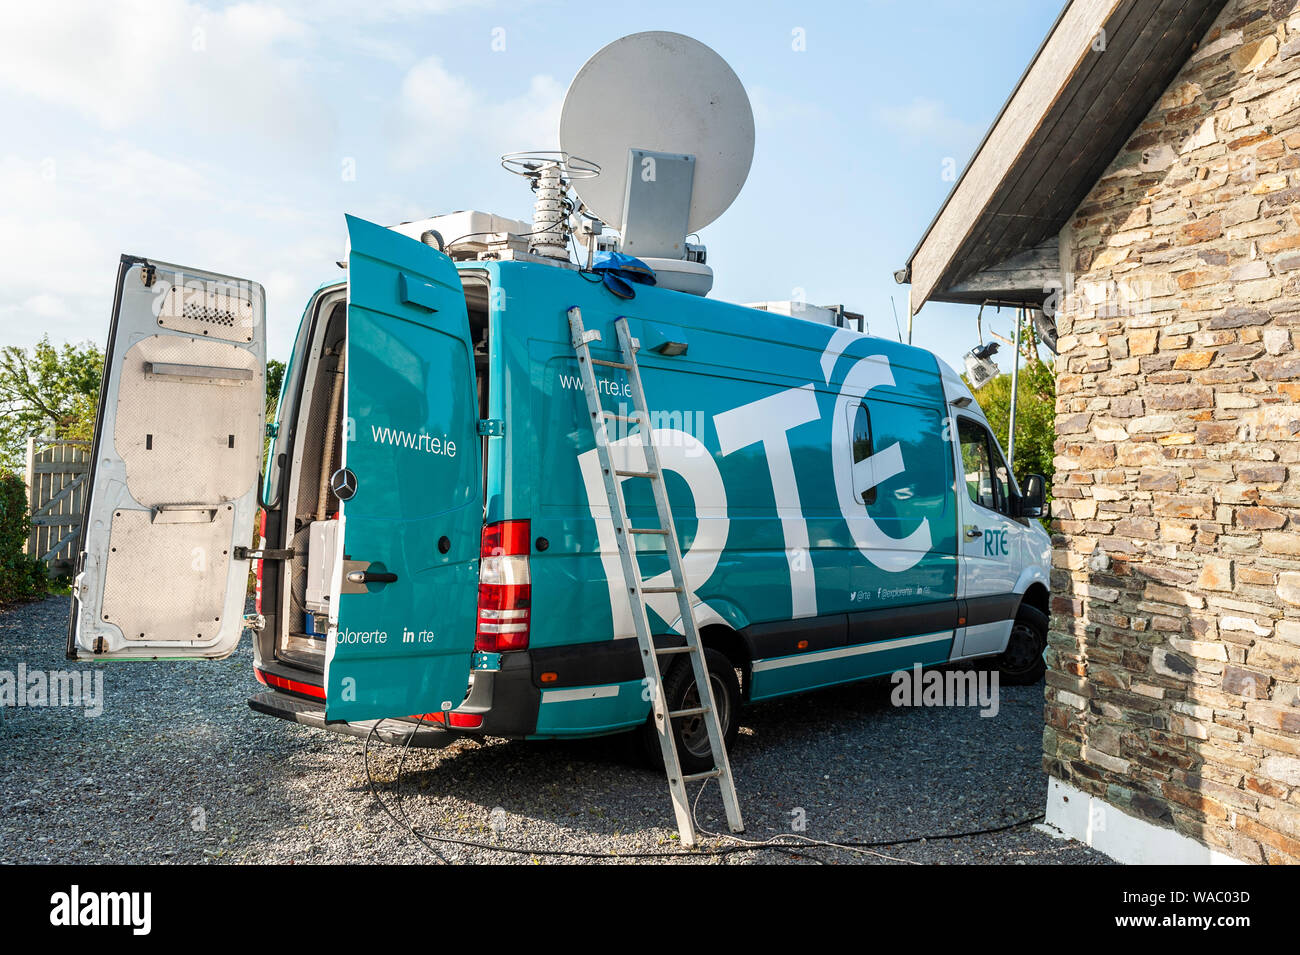 RTE à l'extérieur de diffusion satellite van sur place à Schull, West Cork, Irlande. Banque D'Images